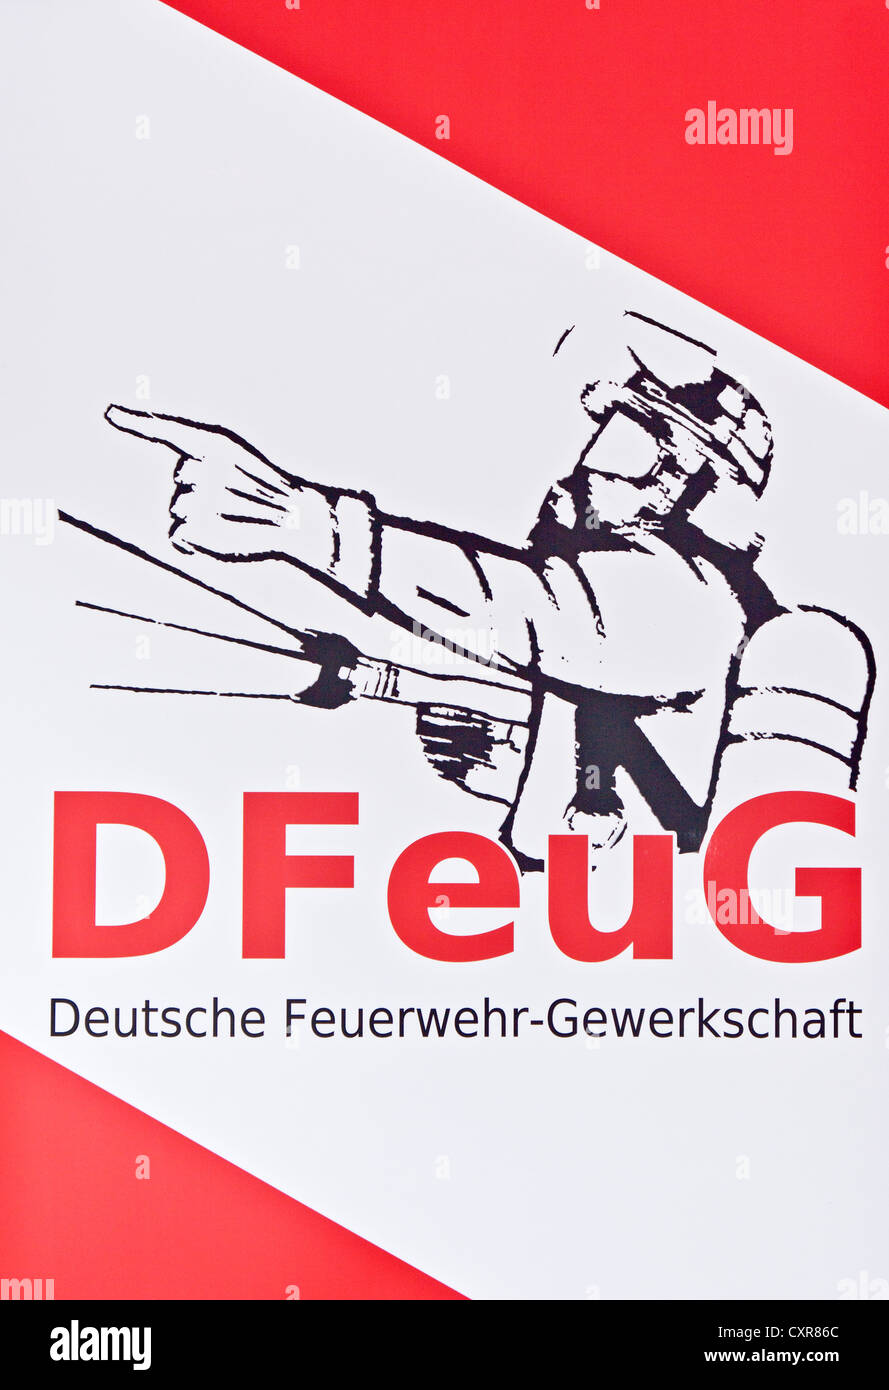 Bannière, DFeuG Feuerwehr-Gewerkschaft allemand, Deutsche, union des pompiers Banque D'Images